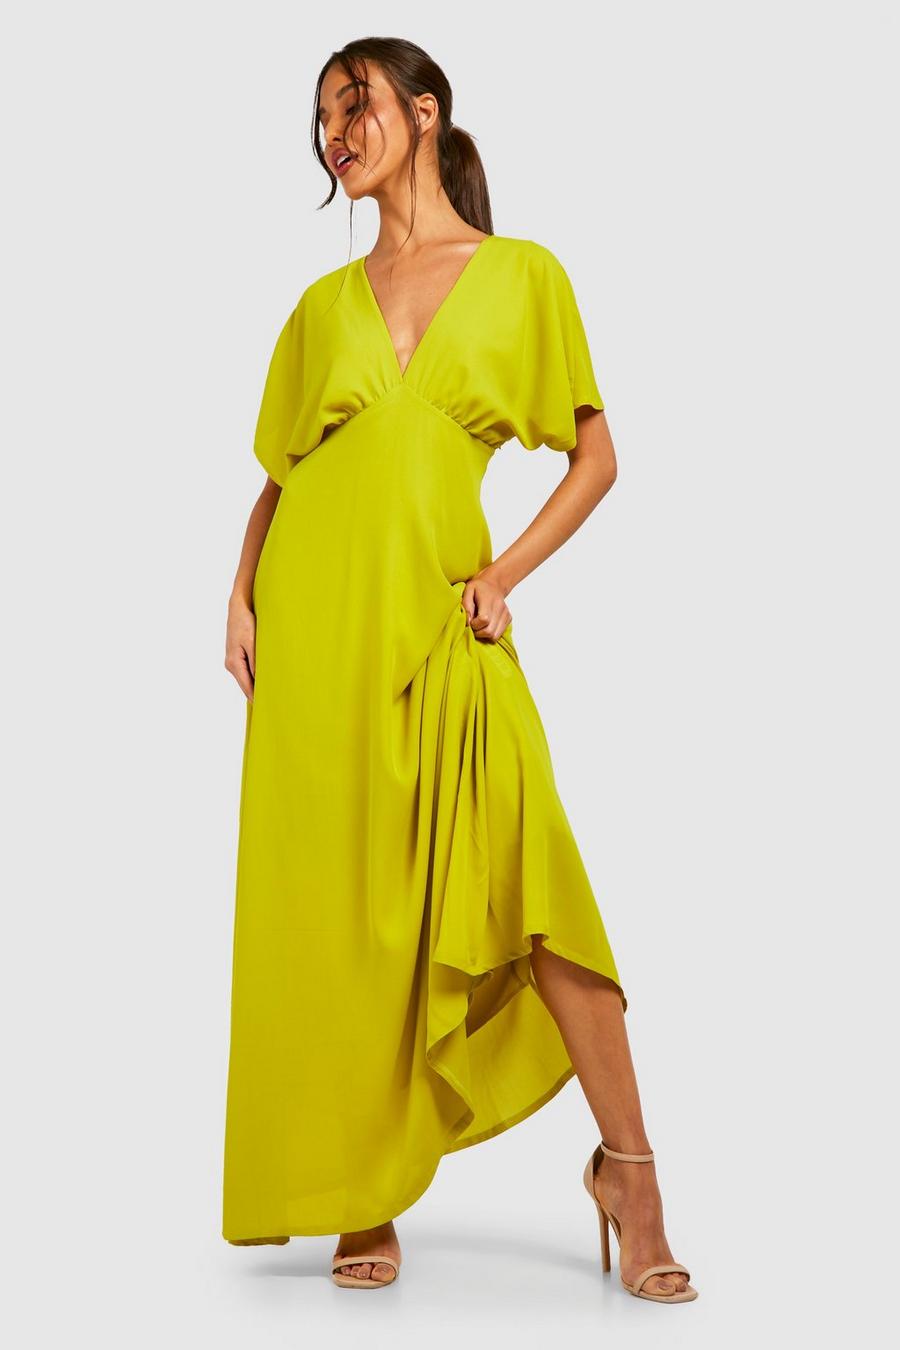 Chartreuse yellow Chiffon Batwing Rouched Maxi Dress